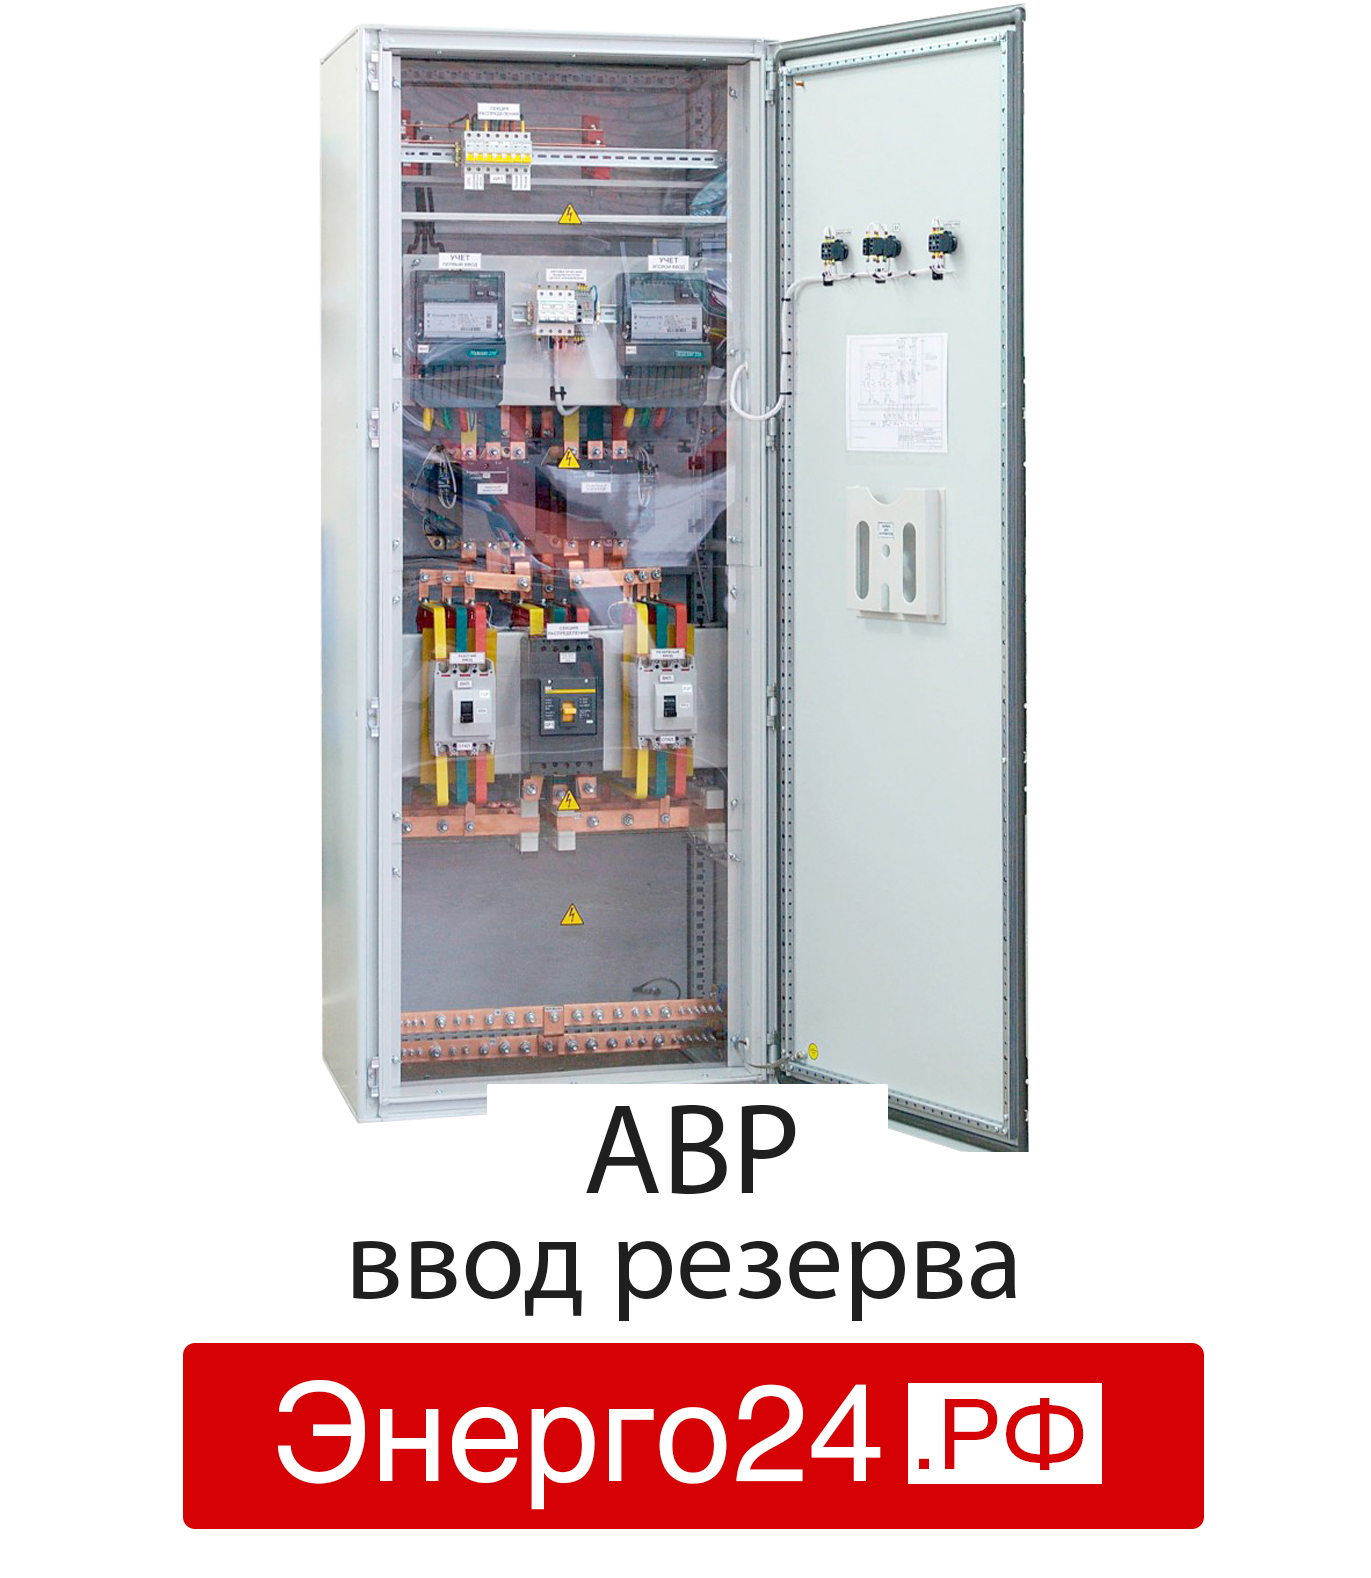 Шкаф АВР 800а